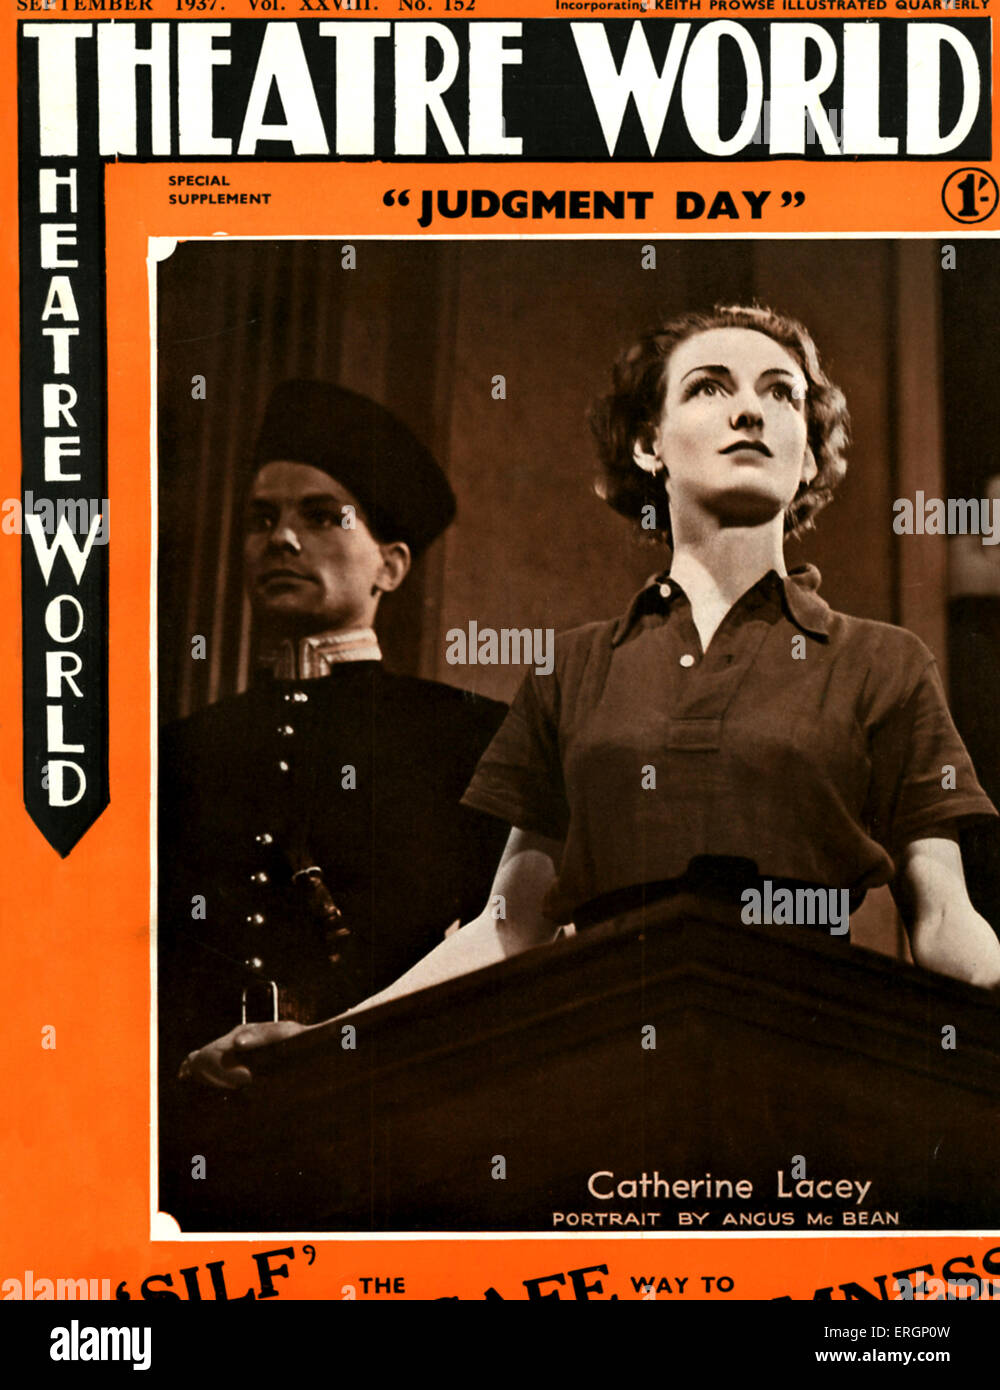 Catherine Lacey - Inglese attrice nel giudizio universale di Elmer riso. Coperchio del mondo teatrale - Settembre 1937. (Ritratto all'interno Foto Stock